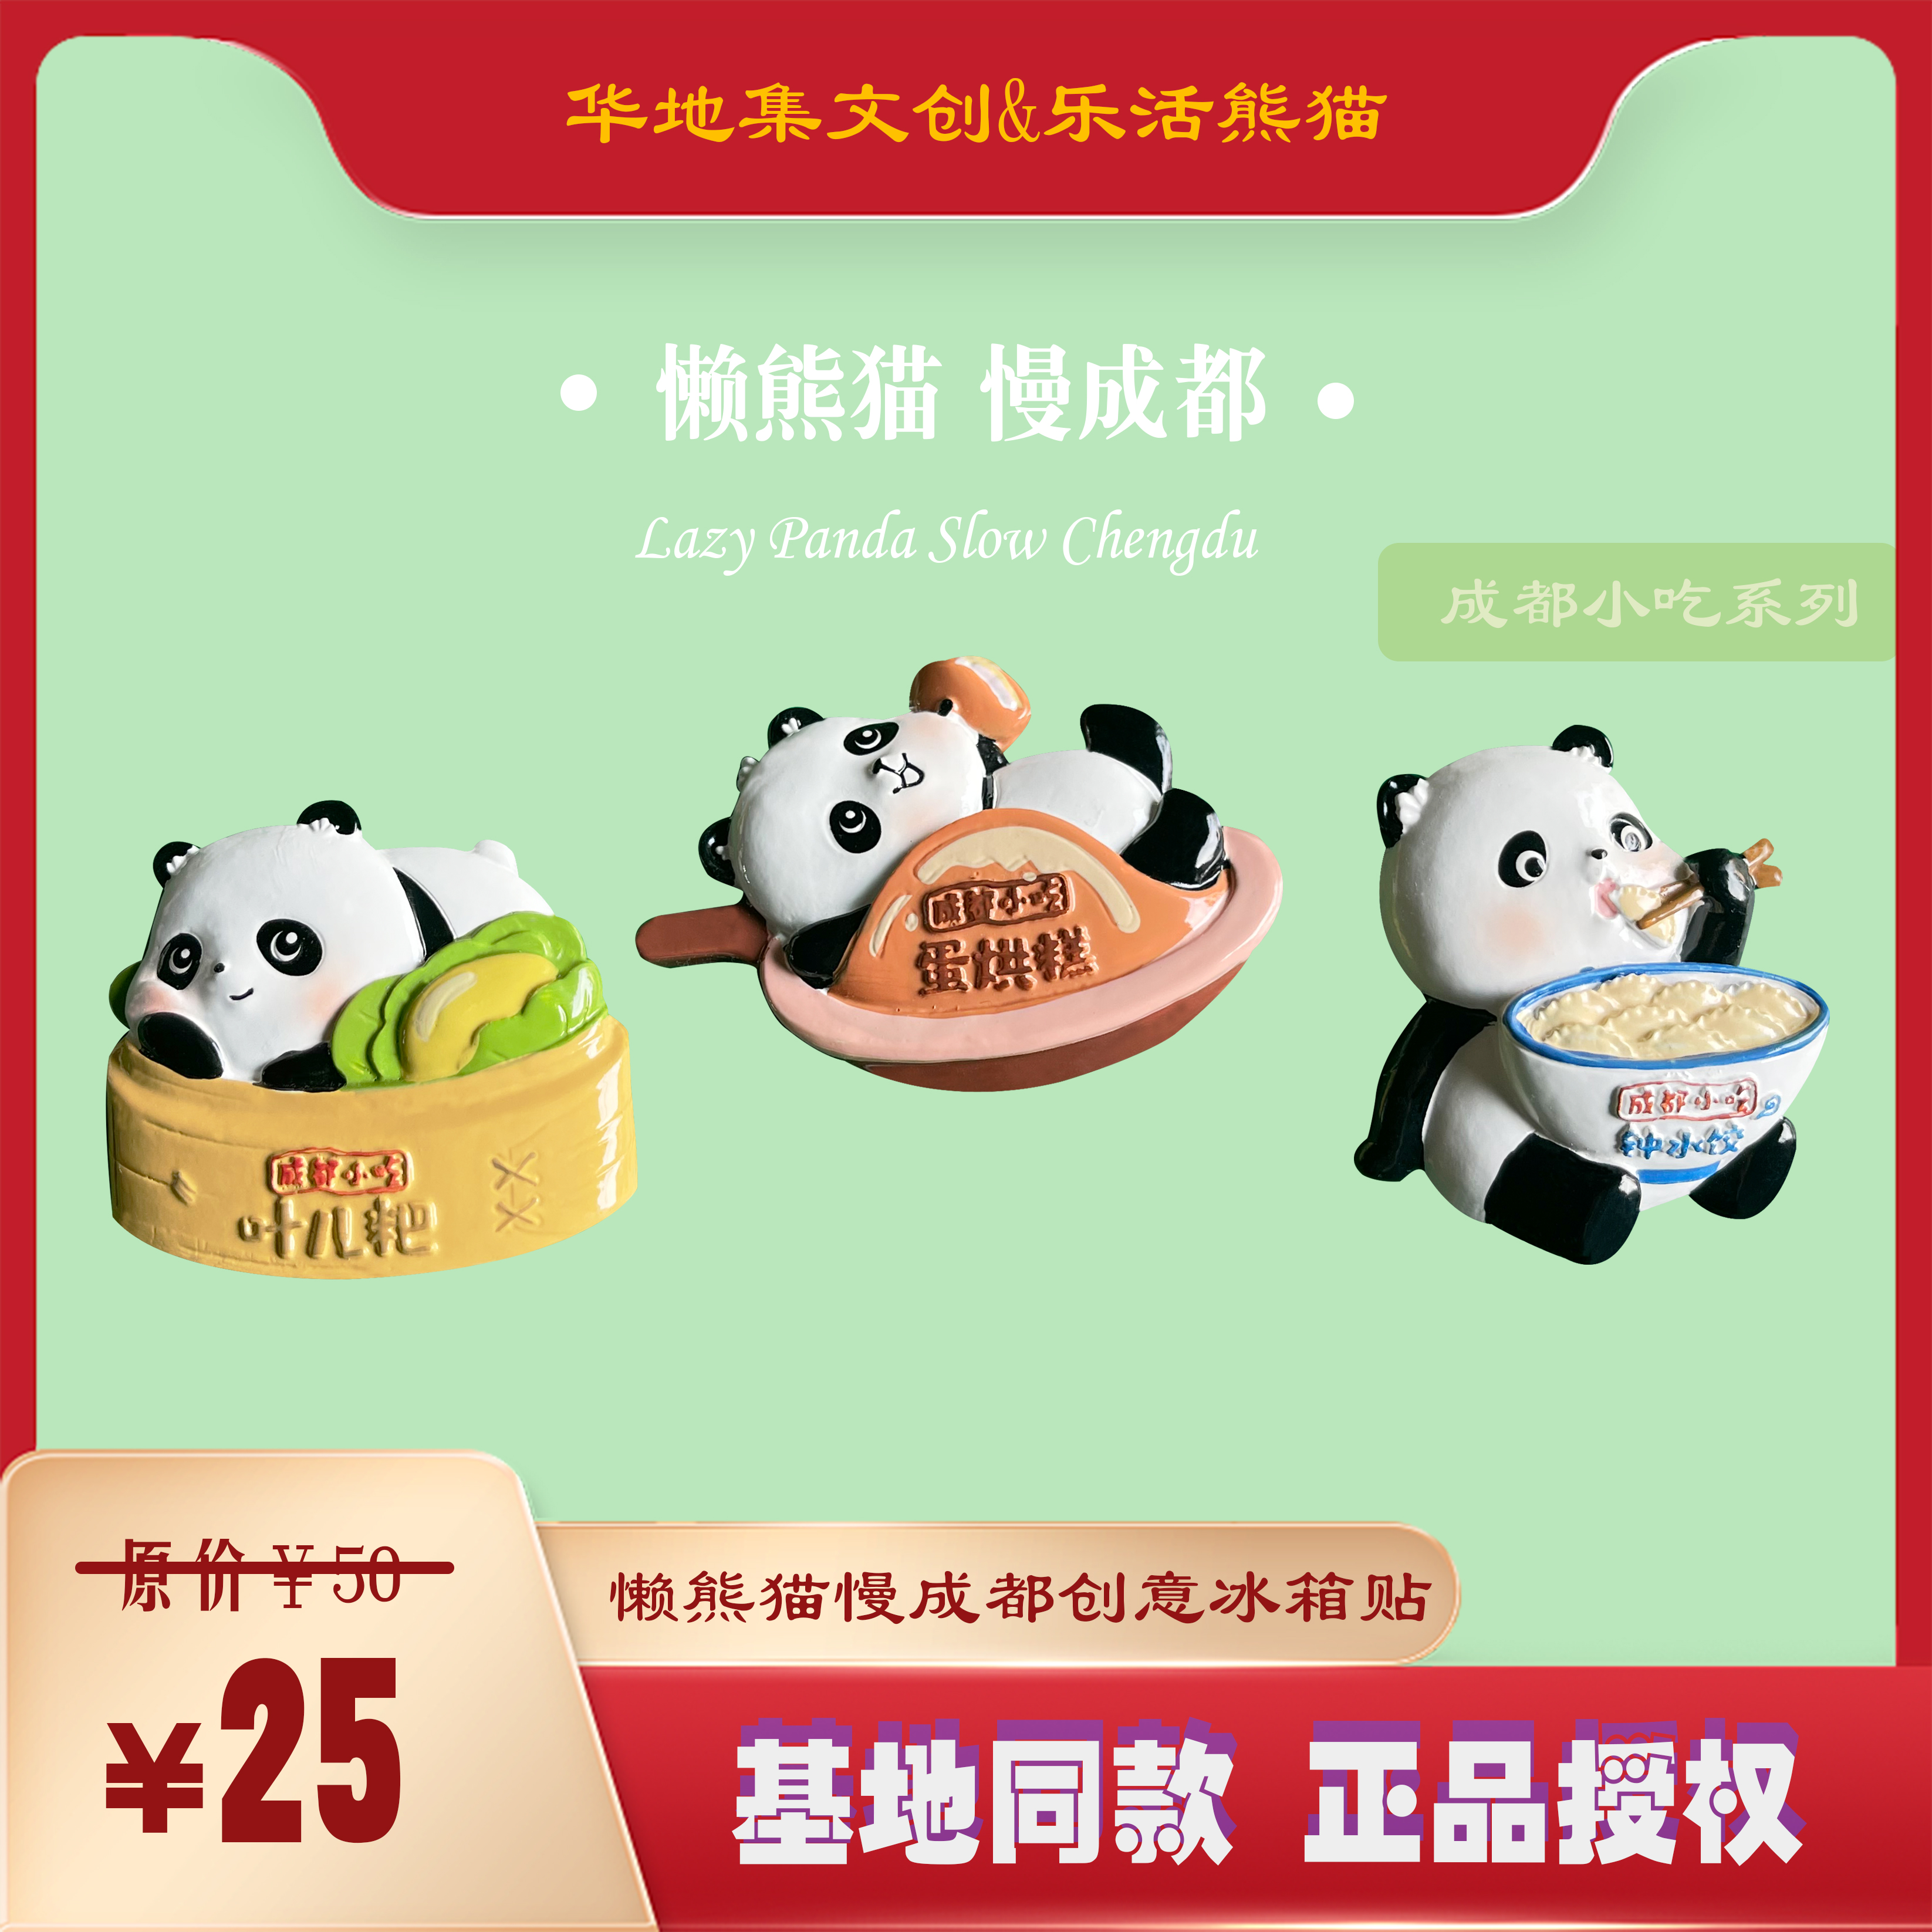 乐活熊猫成都基地同款 正品 文创磁吸冰箱贴纪念品伴手礼装 饰摆件